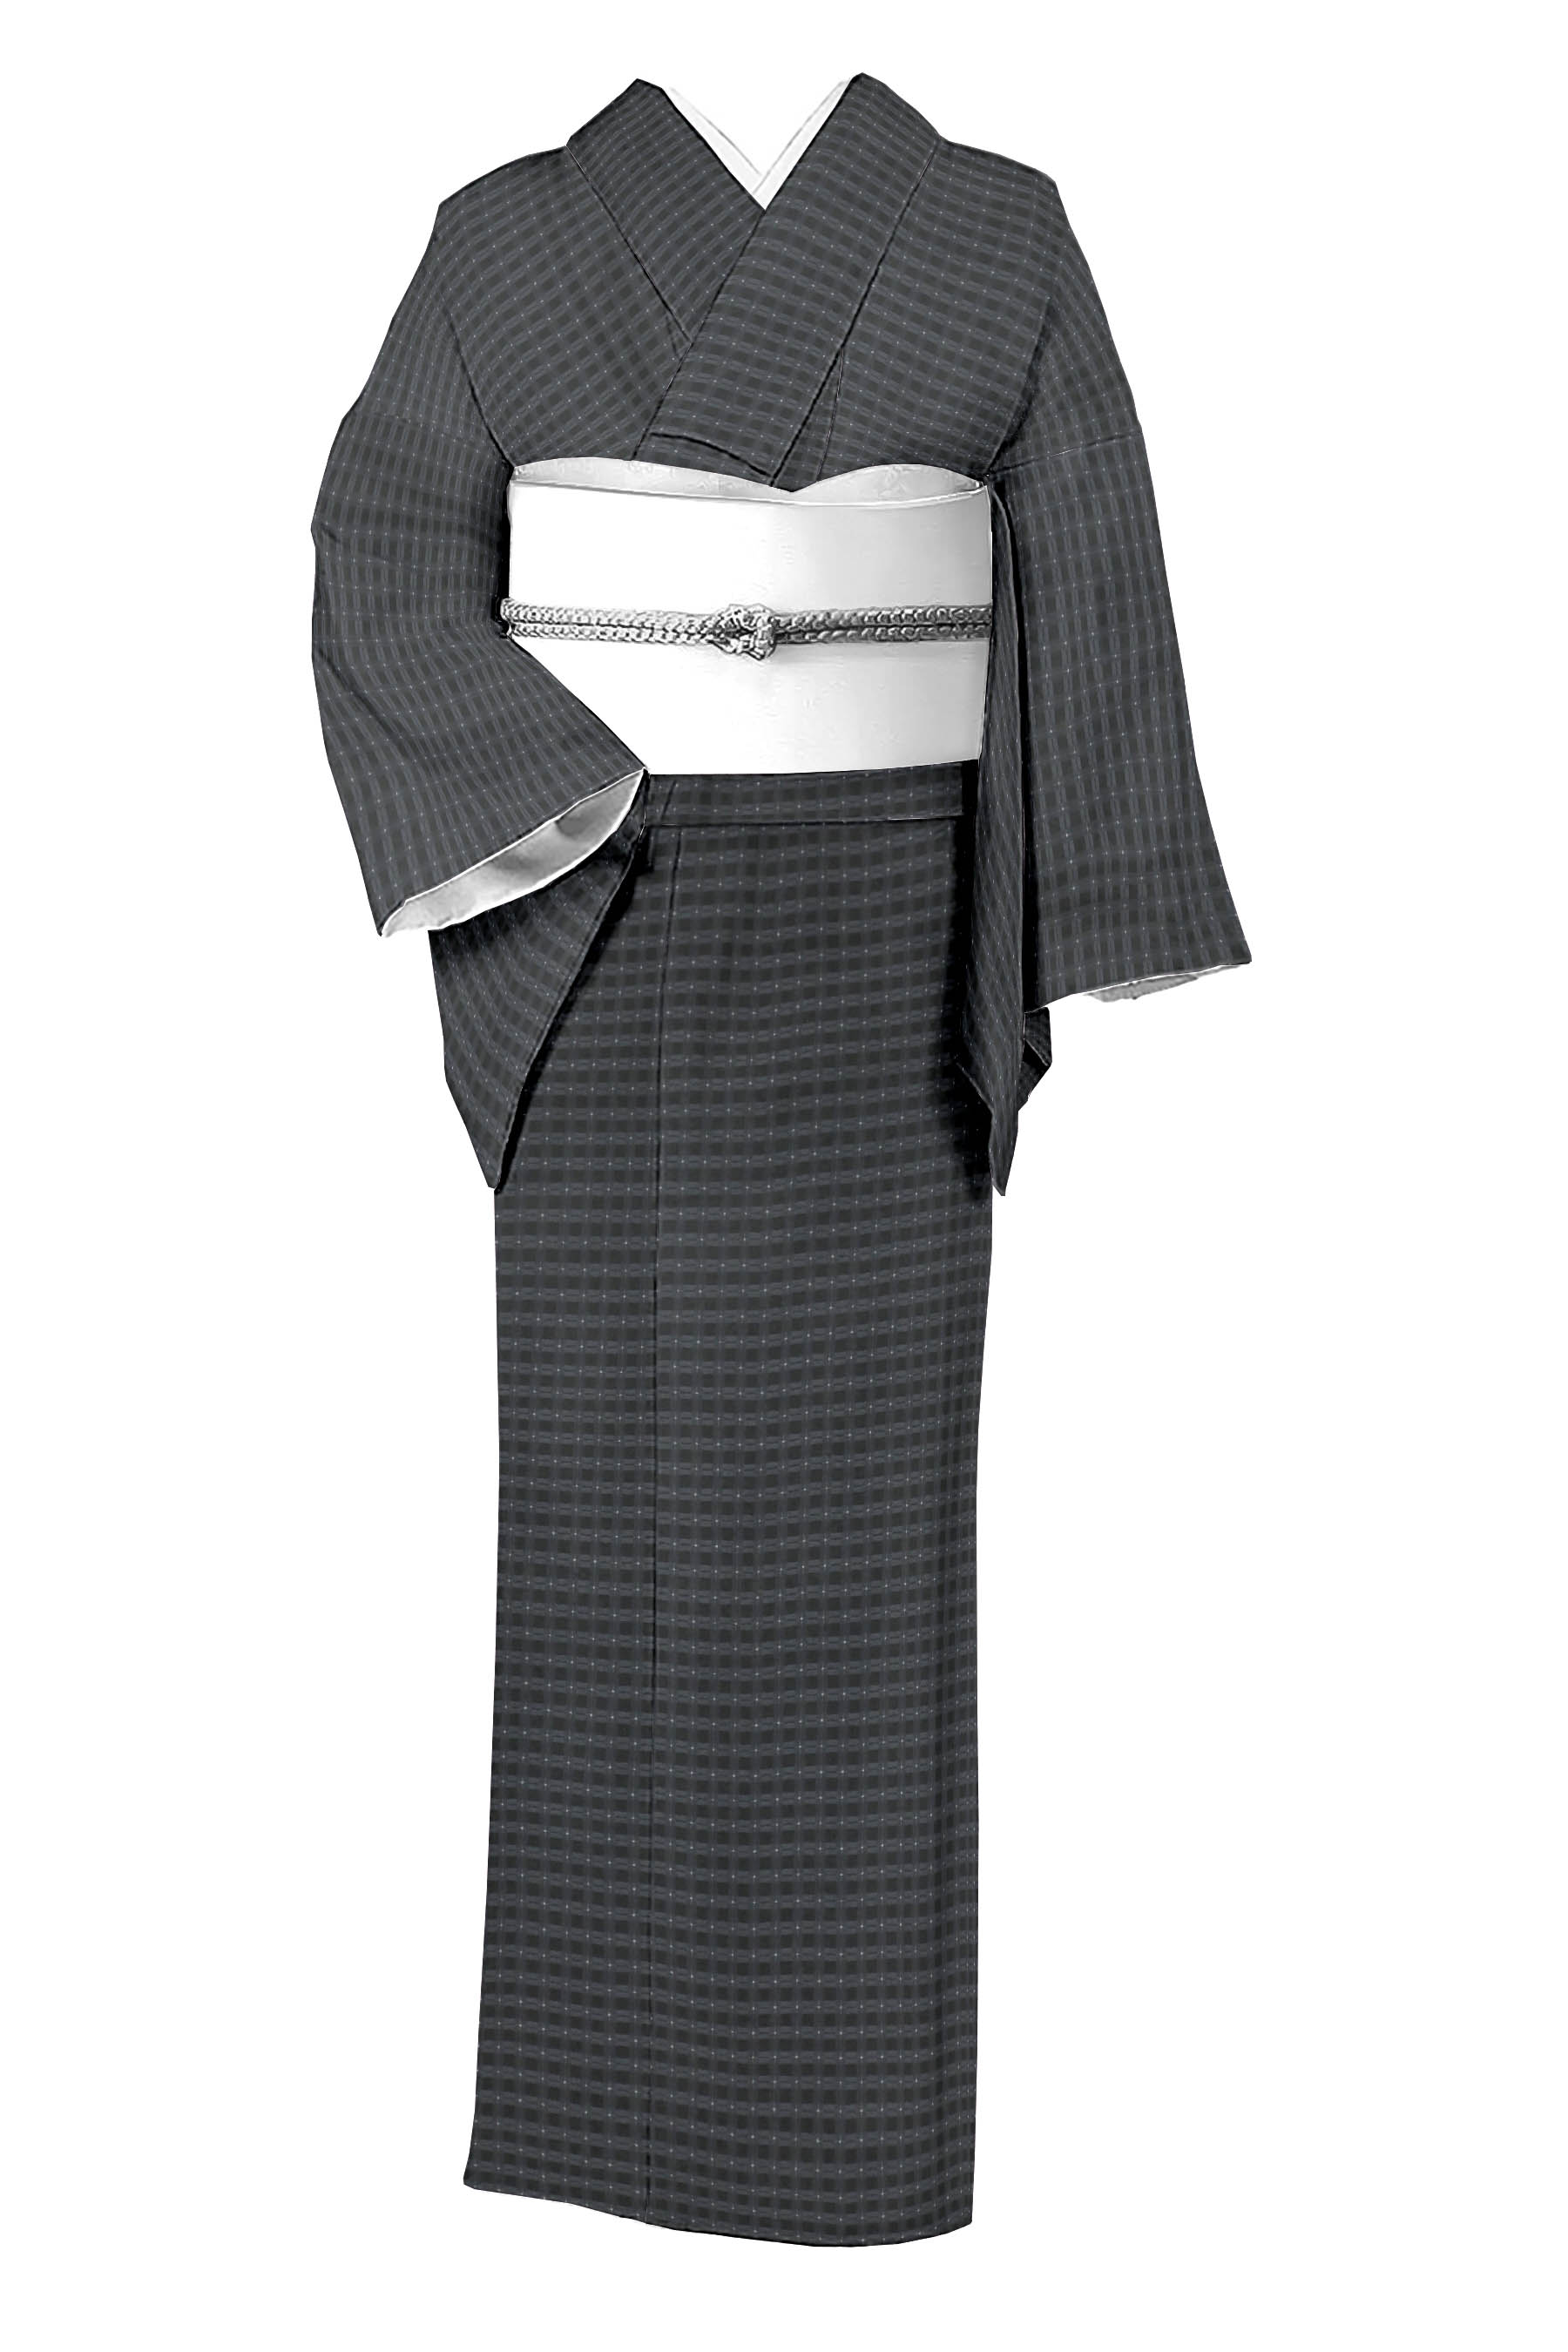 菱屋善兵衛（木野織物）の着物・帯の一覧|京都きもの市場【日本最大級の着物通販サイト】